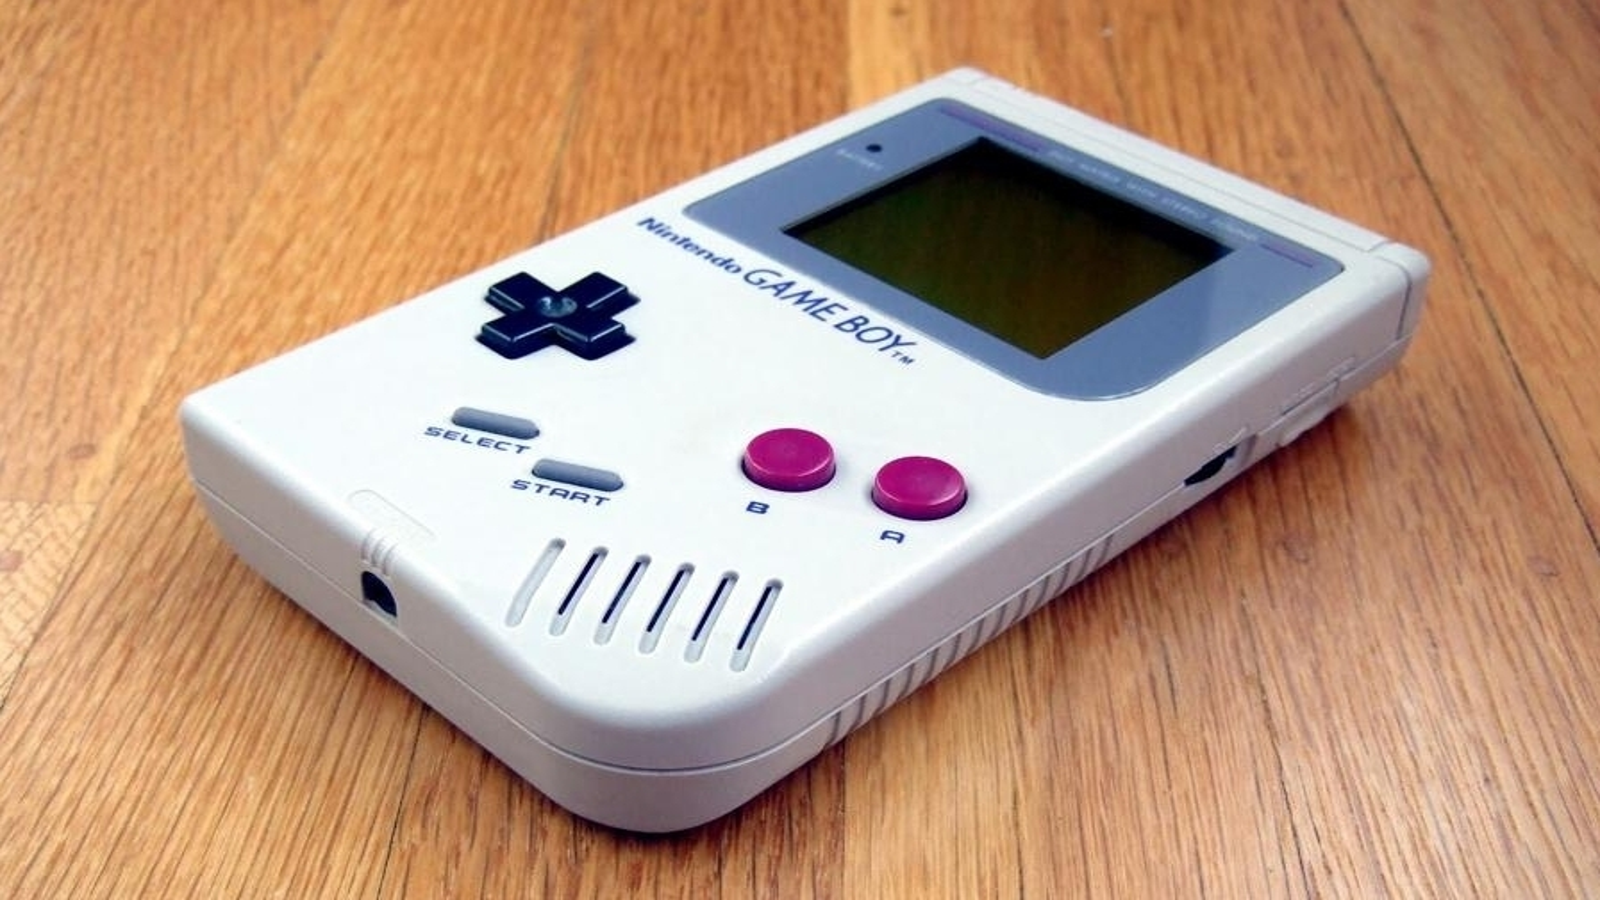 Game Boy: el ladrillo que luchó por convertirse en un fenómeno